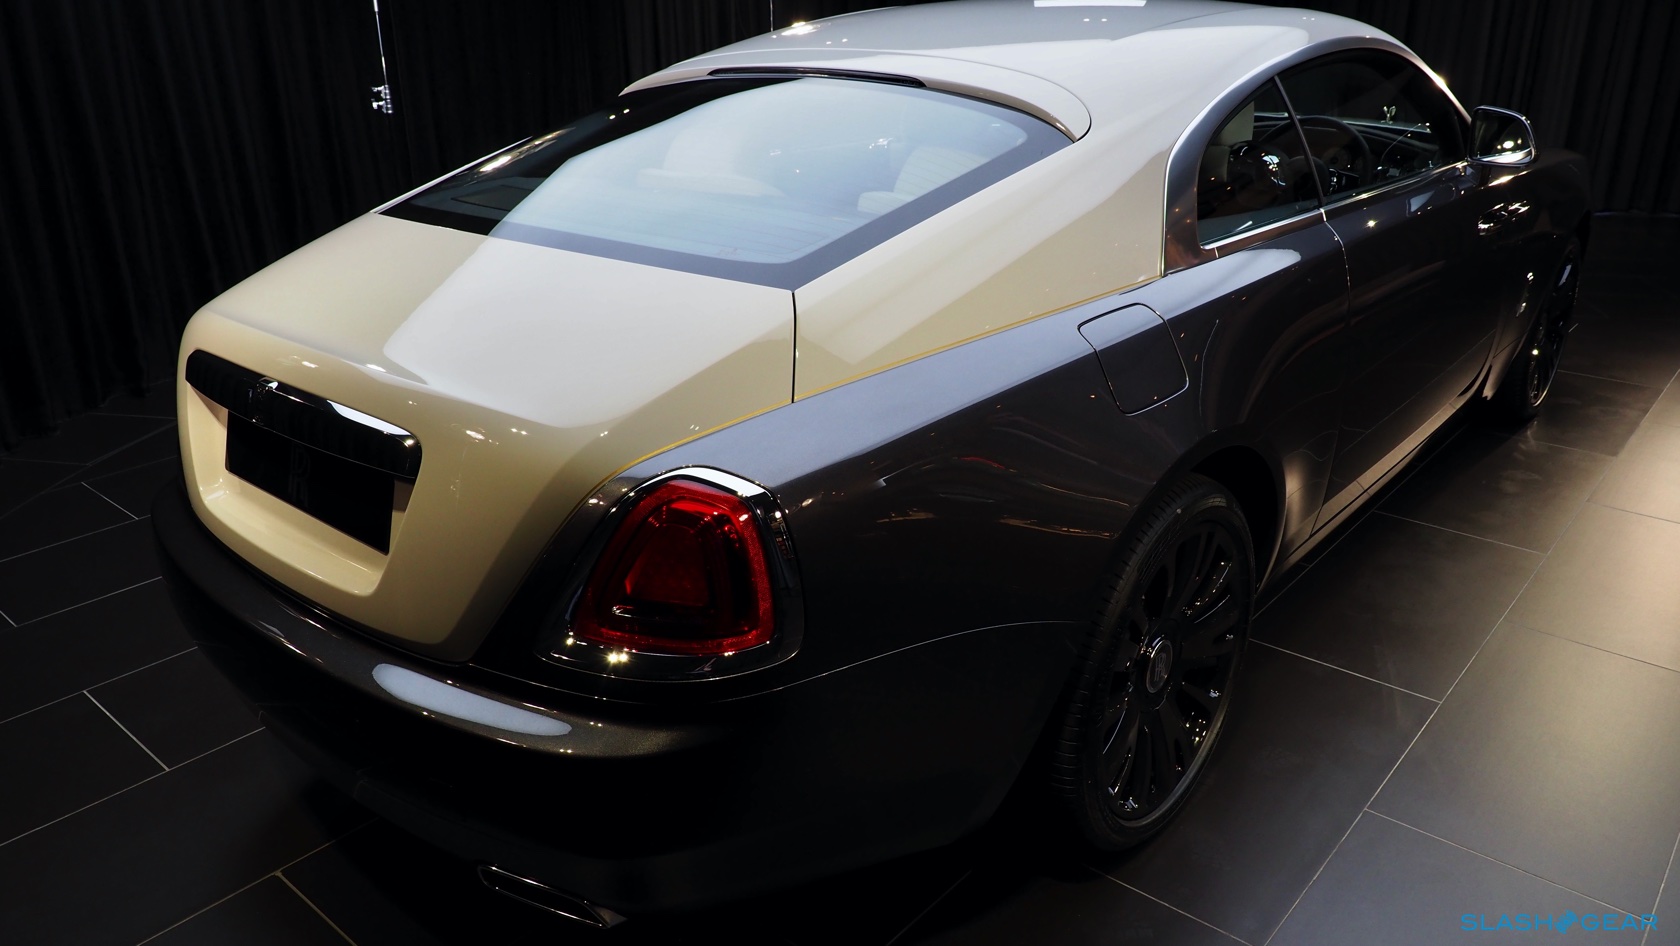 The Rolls Royce Wraith Eagle Viii Takes Bespoke To The Next